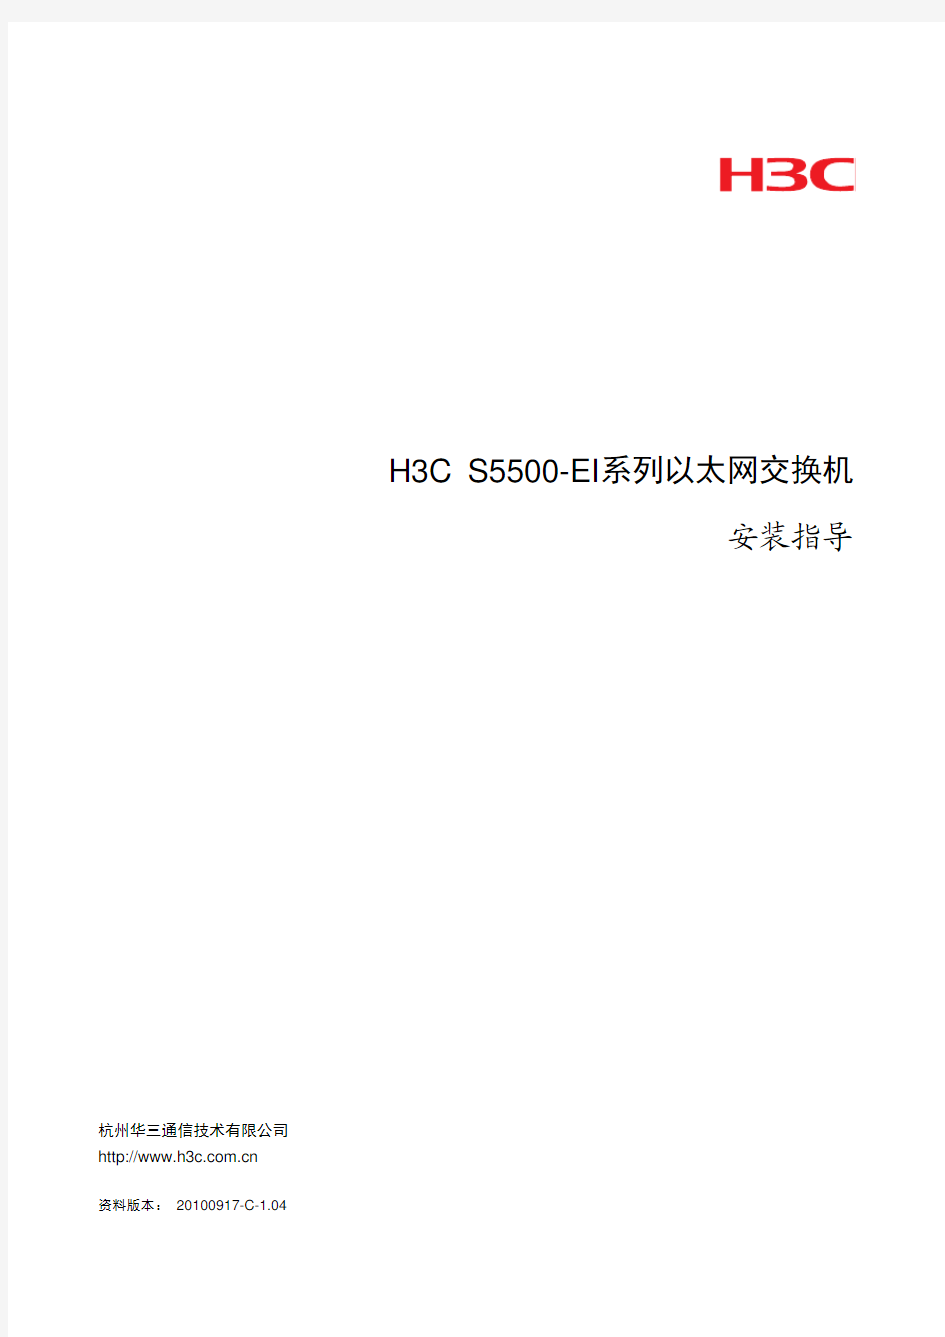 H3C S5500-EI系列以太网交换机 安装指导(V1.04)-整本手册